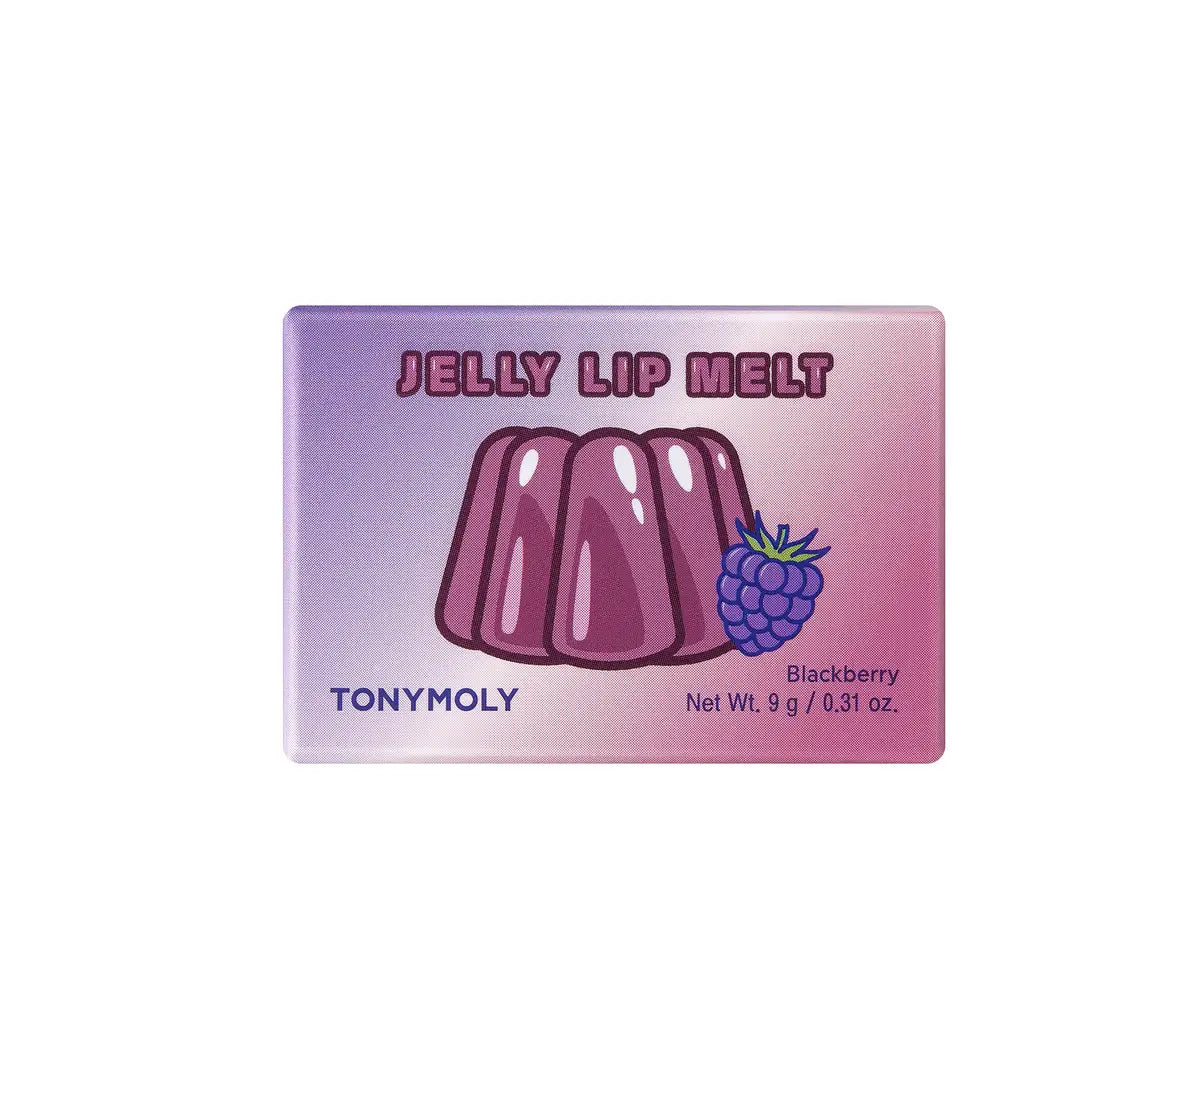 Tonymoly Jelly Lip Melt: Green Grape